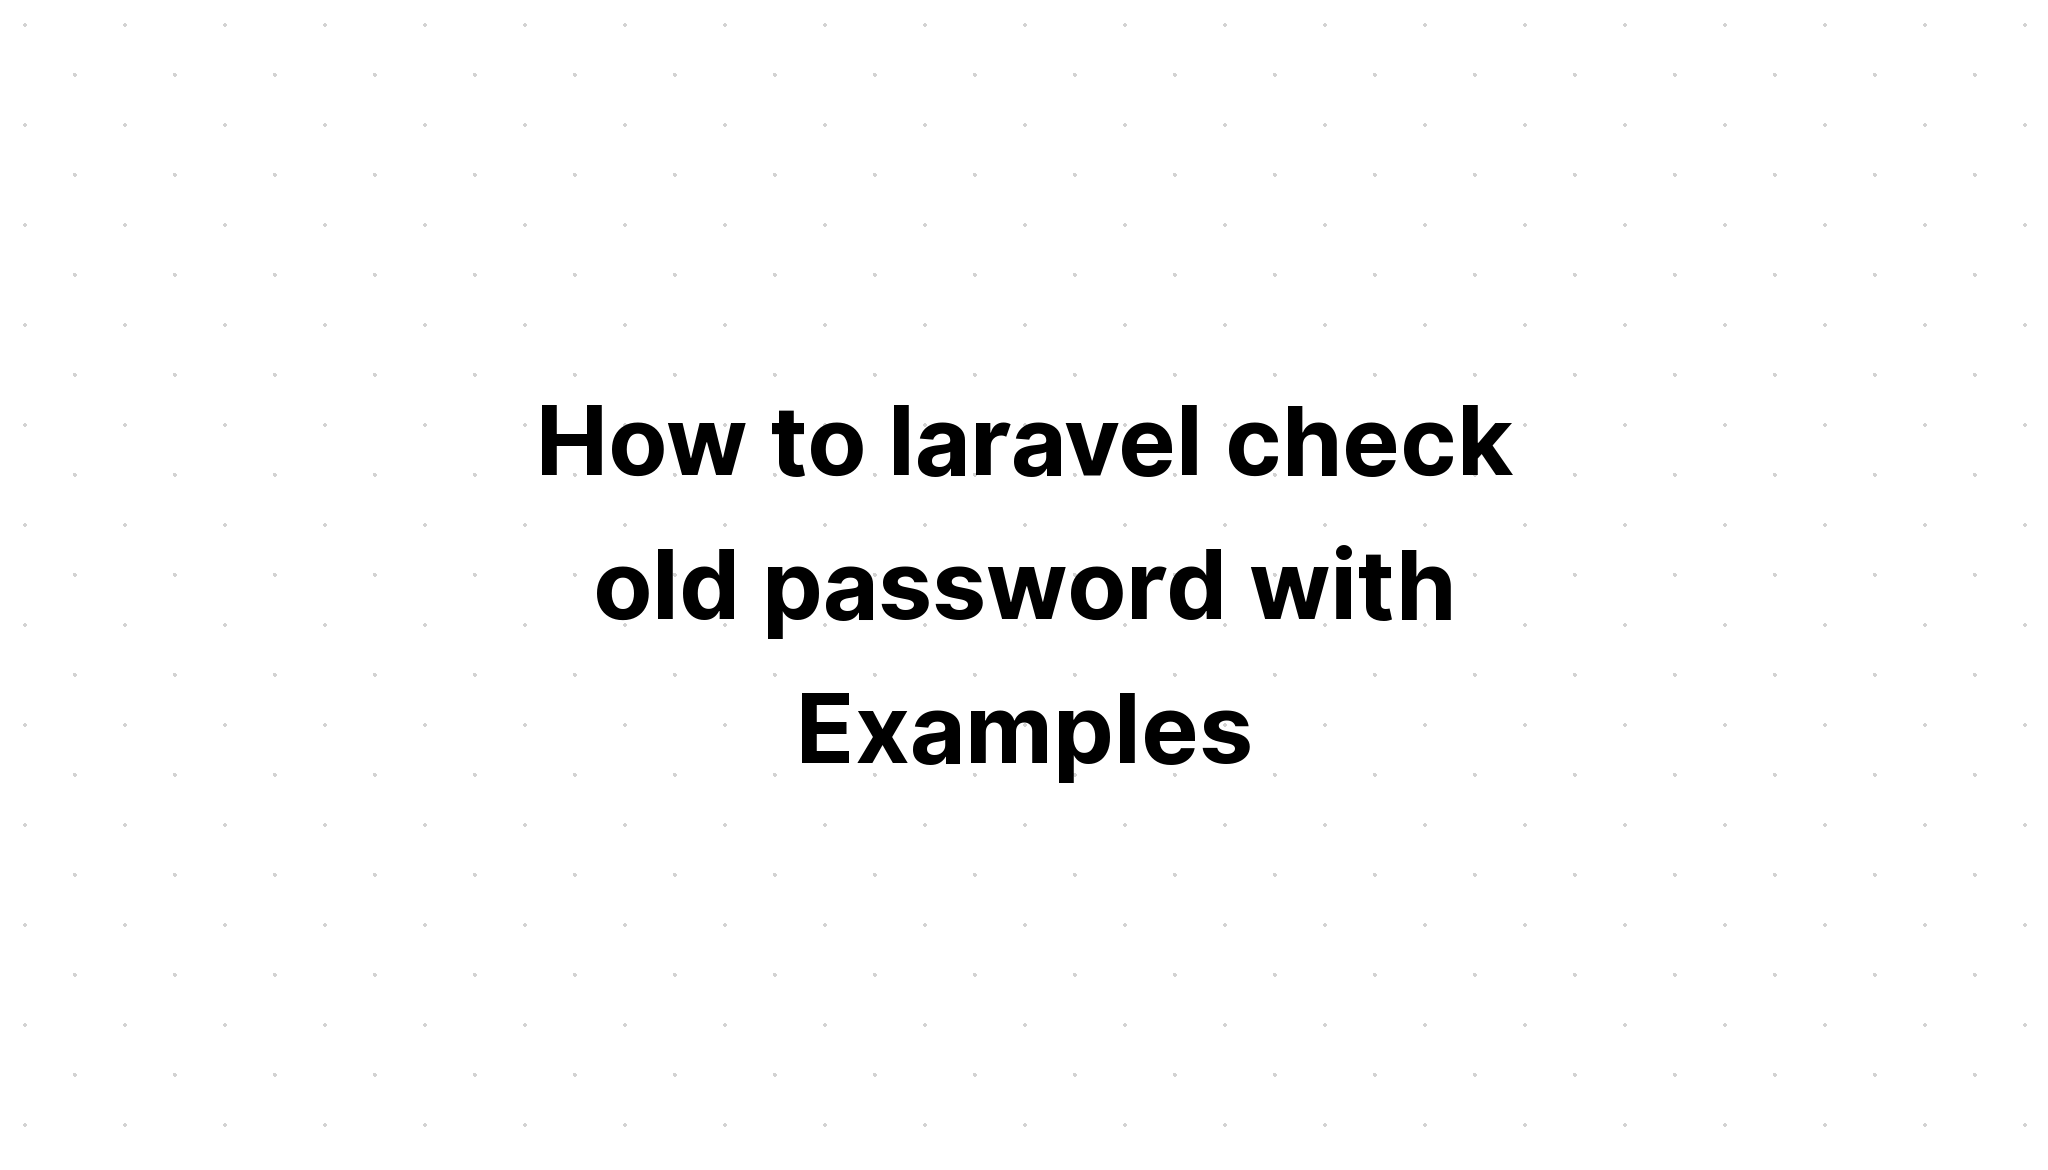 Cách laravel kiểm tra mật khẩu cũ với Ví dụ